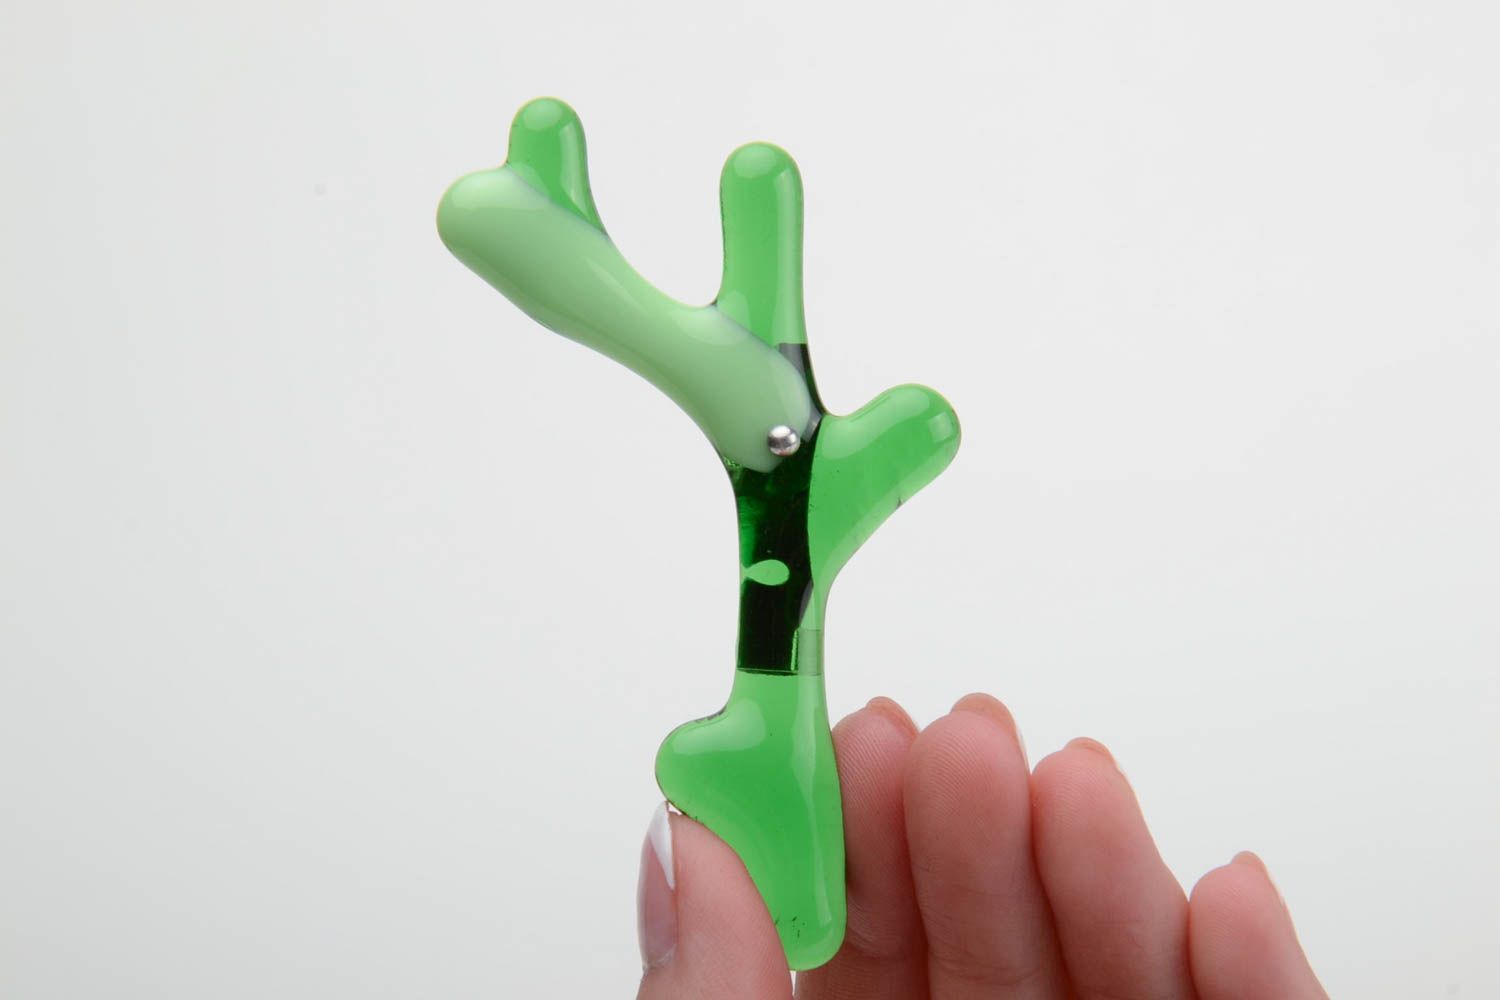 Стеклянная брошь в технике фьюзинг ручной работы в виде зеленой веточки фото 4